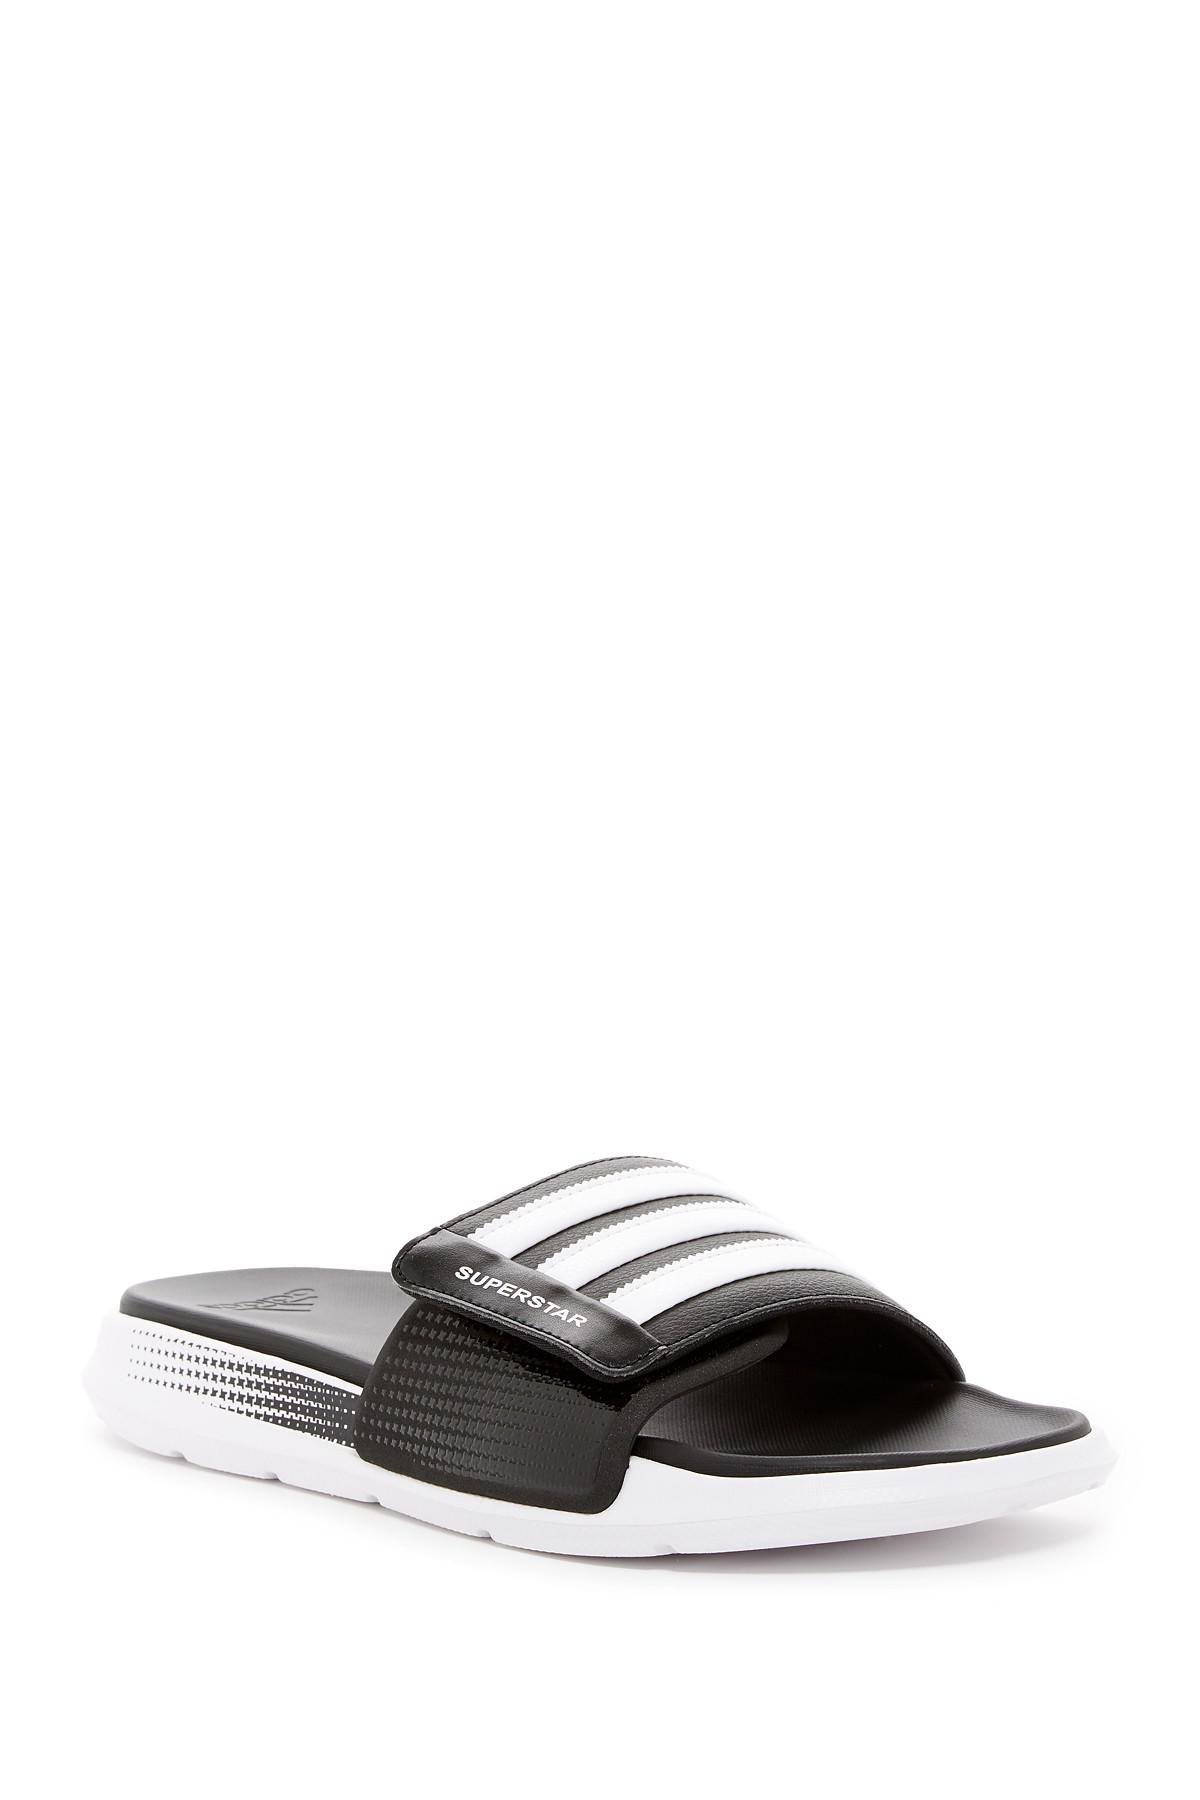 adidas Originals Superstar 4g Slide Sandal (men's) for Men - Lyst